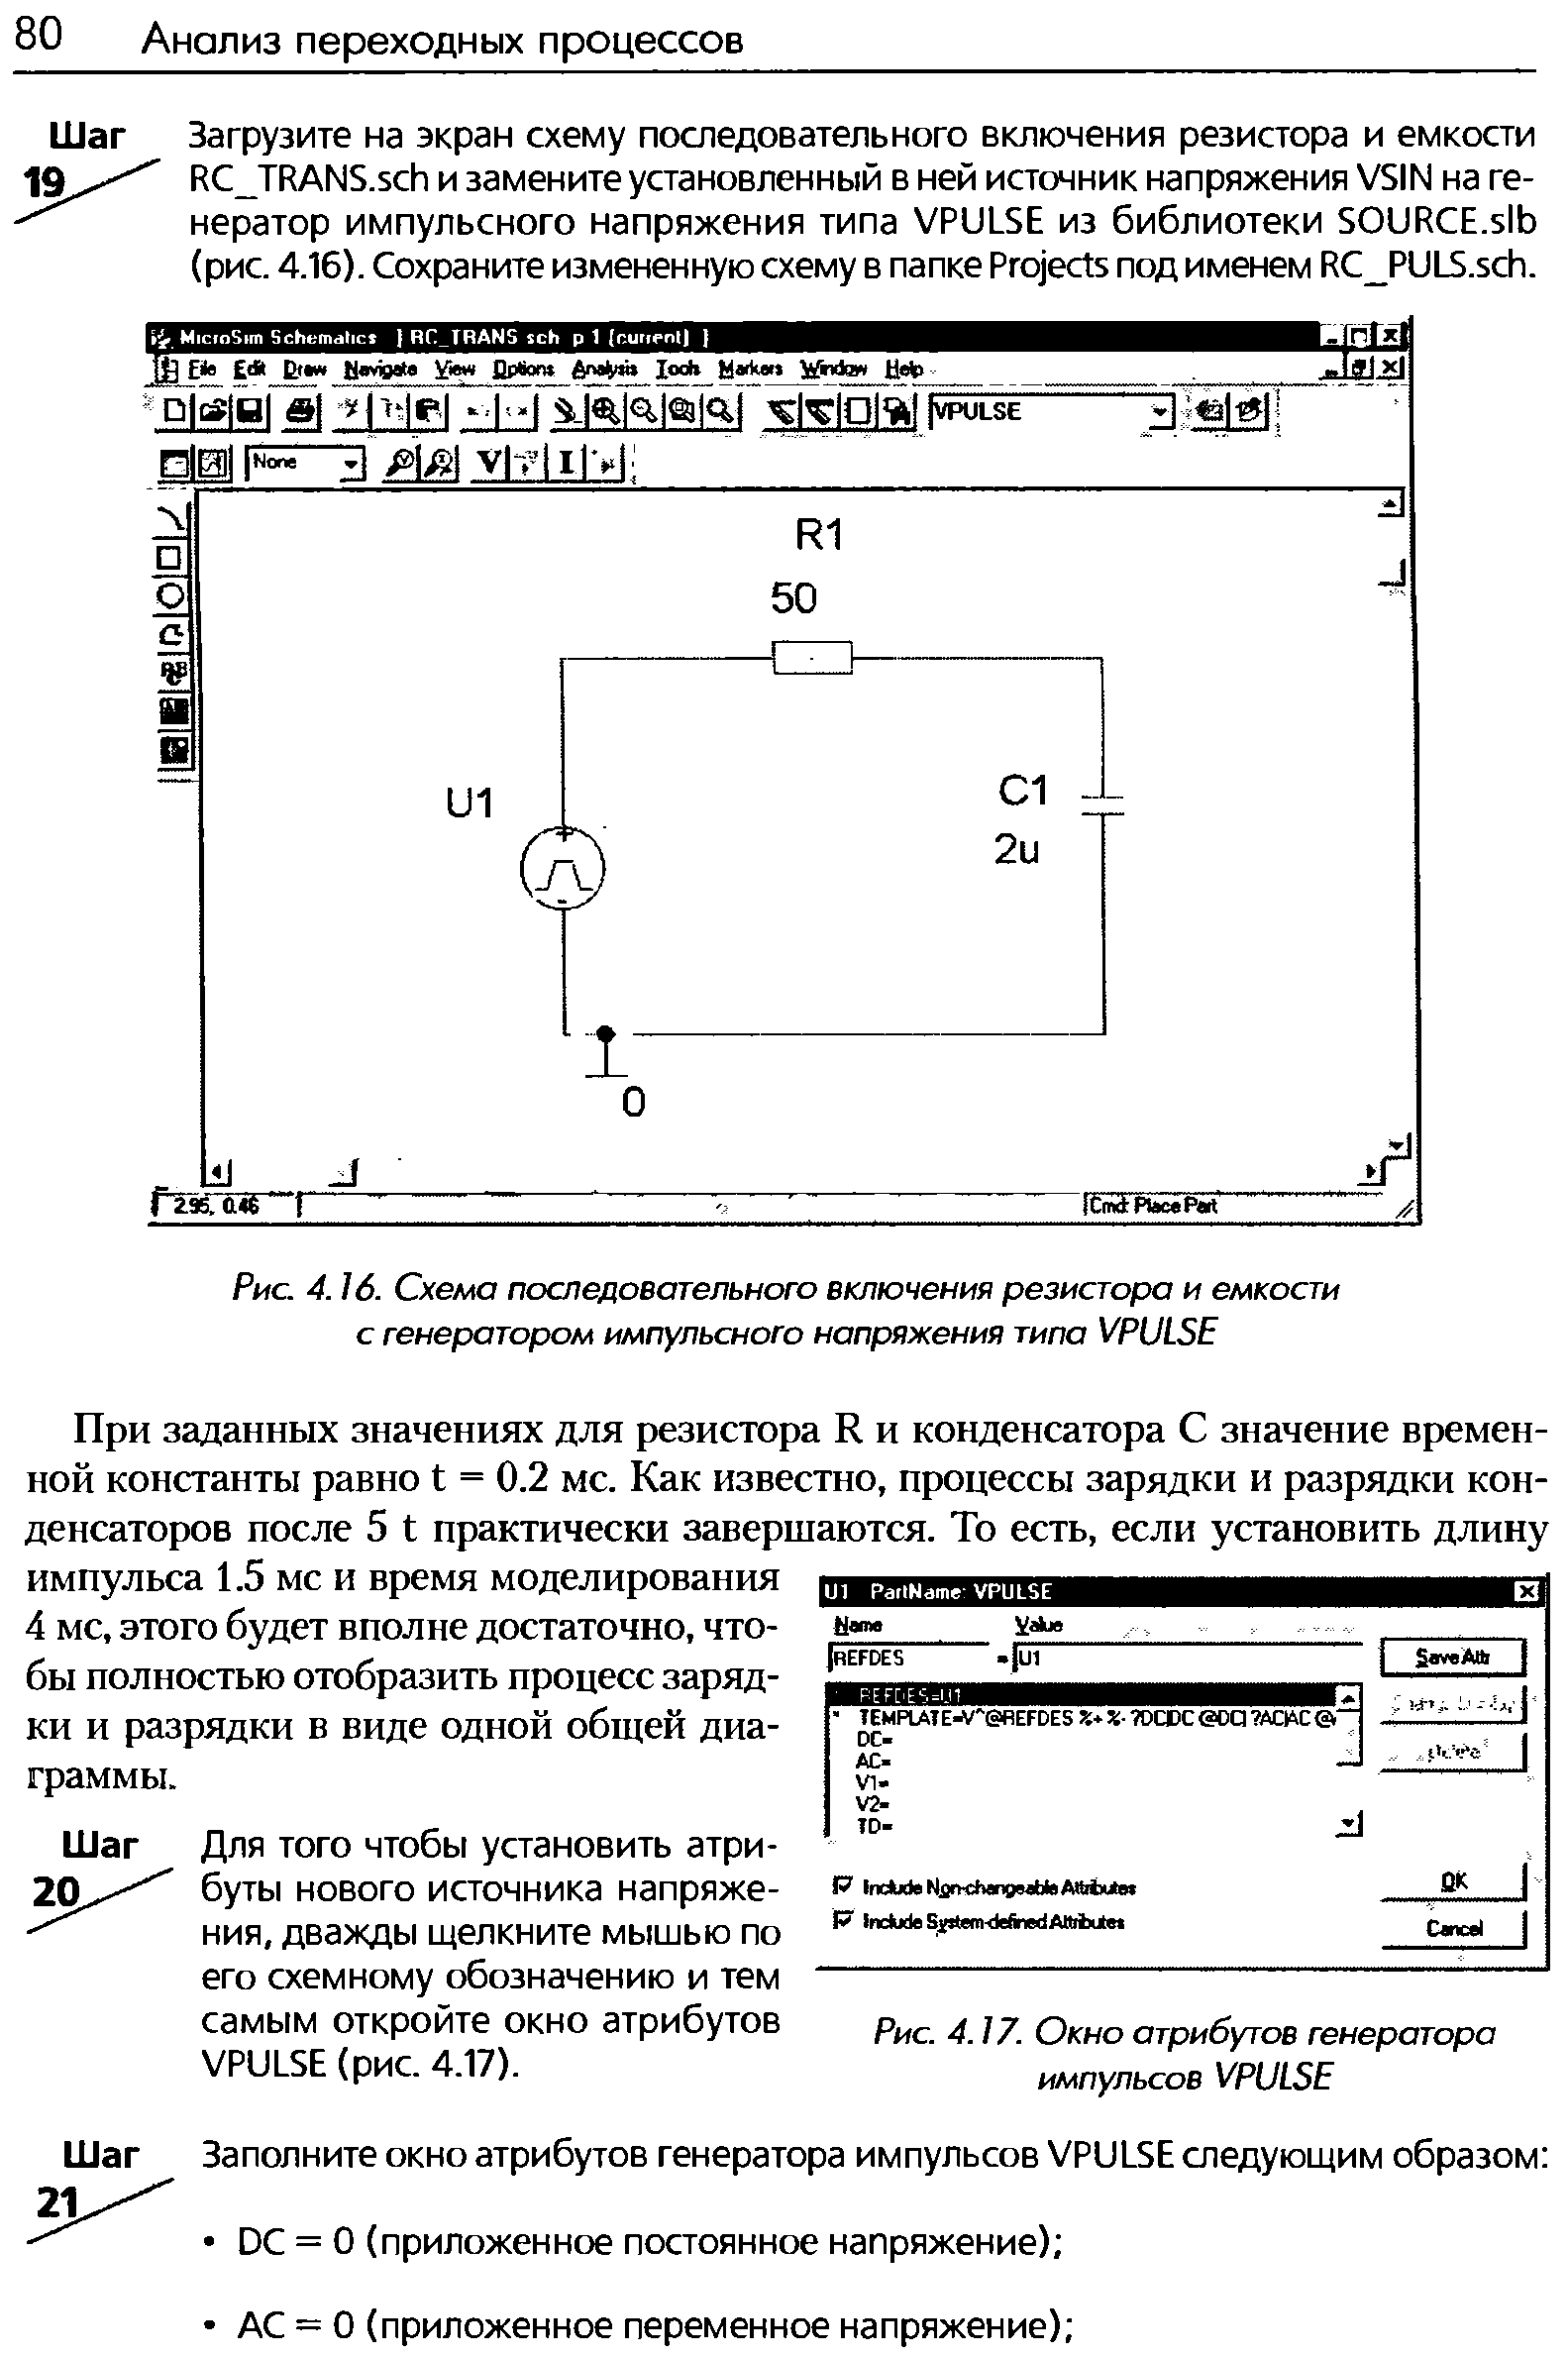 Рис. 4.16. Схема последовательного включения резистора и емкости с генератором импульсного напряжения типа VPULSE
